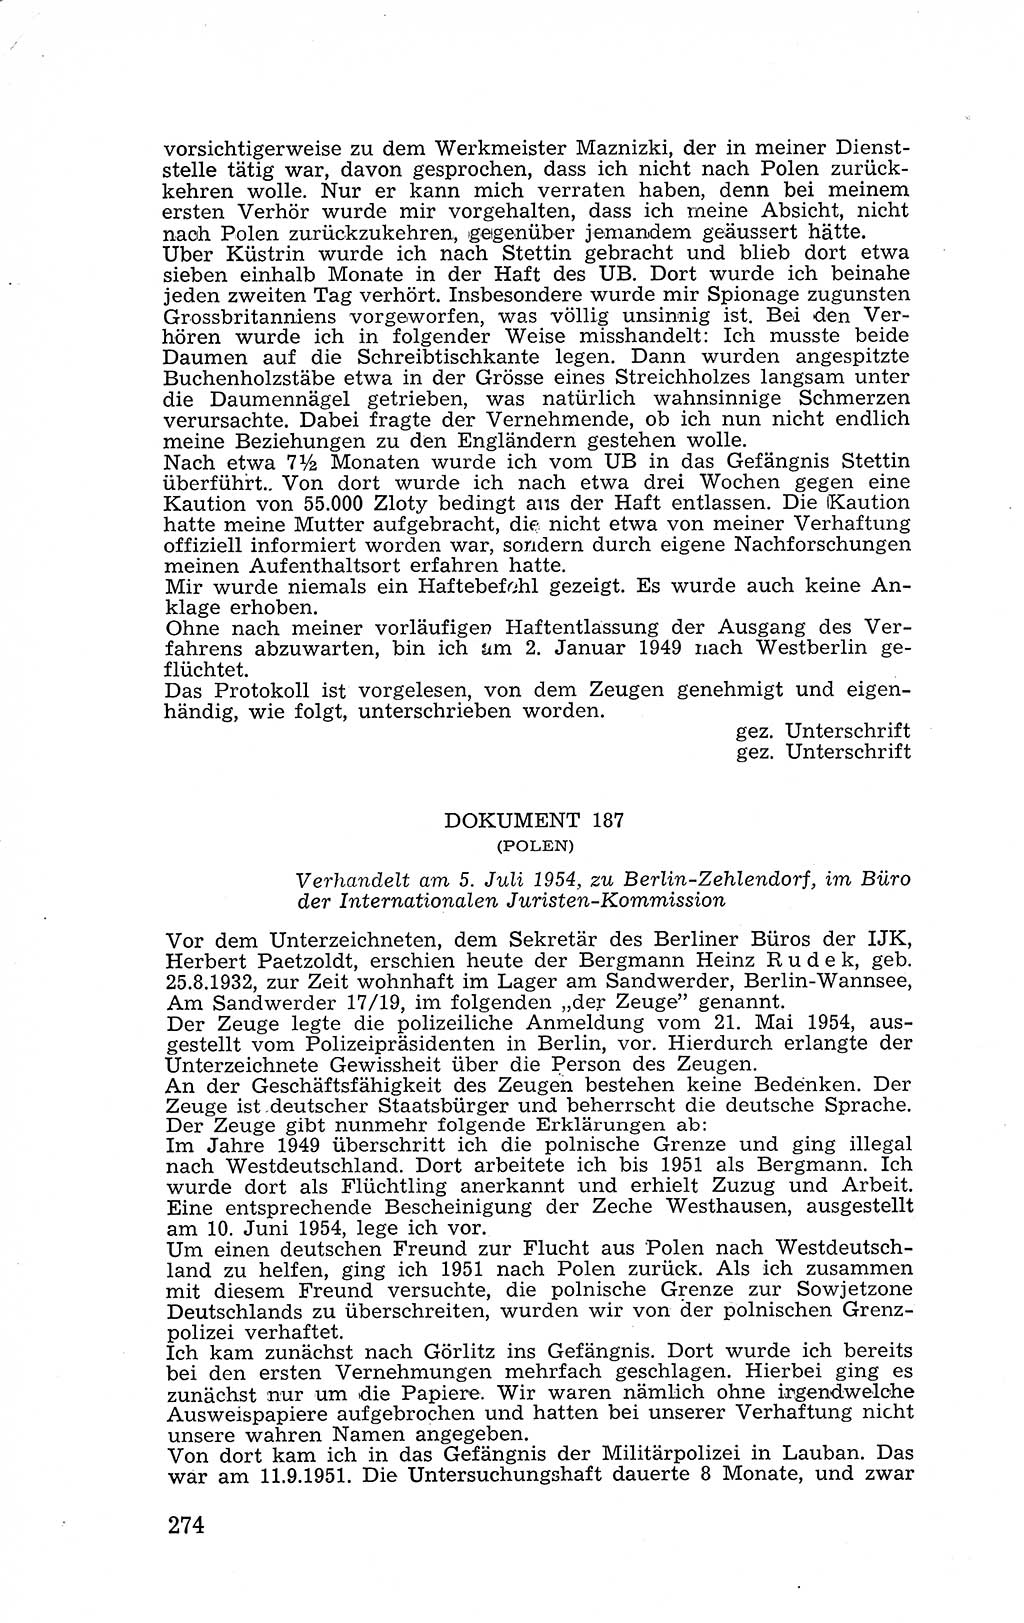 Recht in Fesseln, Dokumente, Internationale Juristen-Kommission [Bundesrepublik Deutschland (BRD)] 1955, Seite 274 (R. Dok. IJK BRD 1955, S. 274)